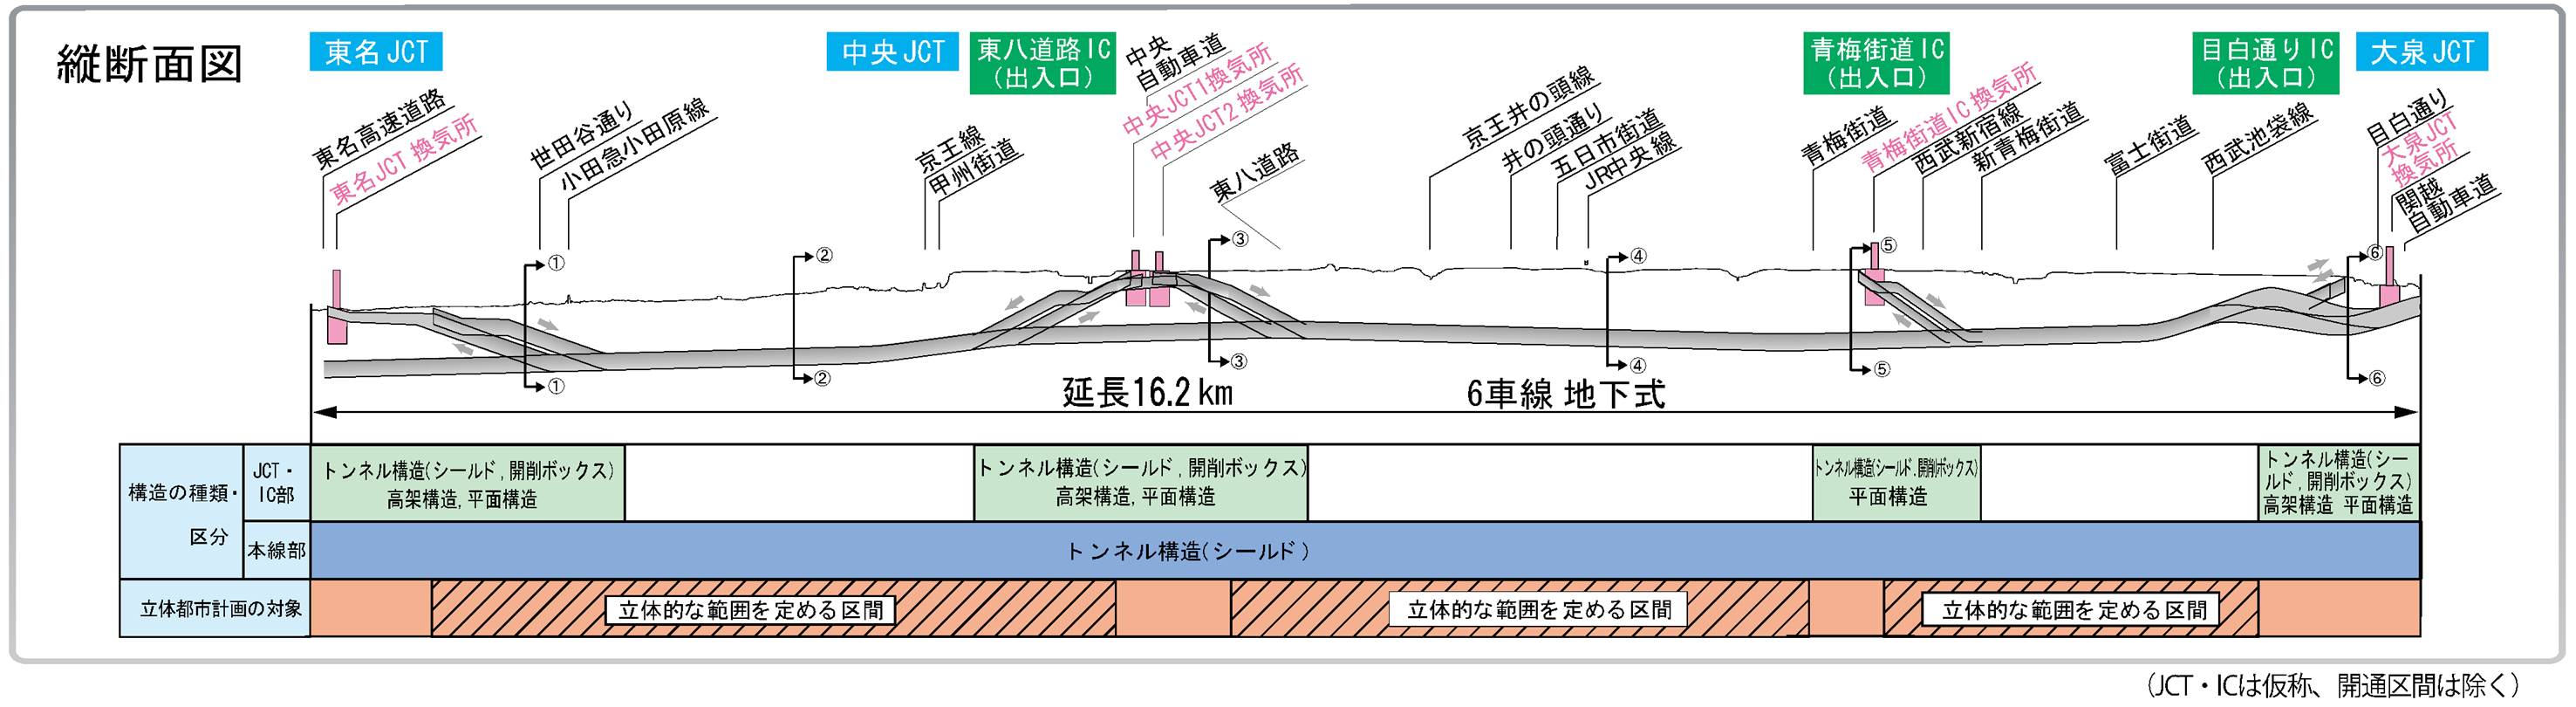 外環道東京区間　関越道～東名高速間の計画概要　縦断面図